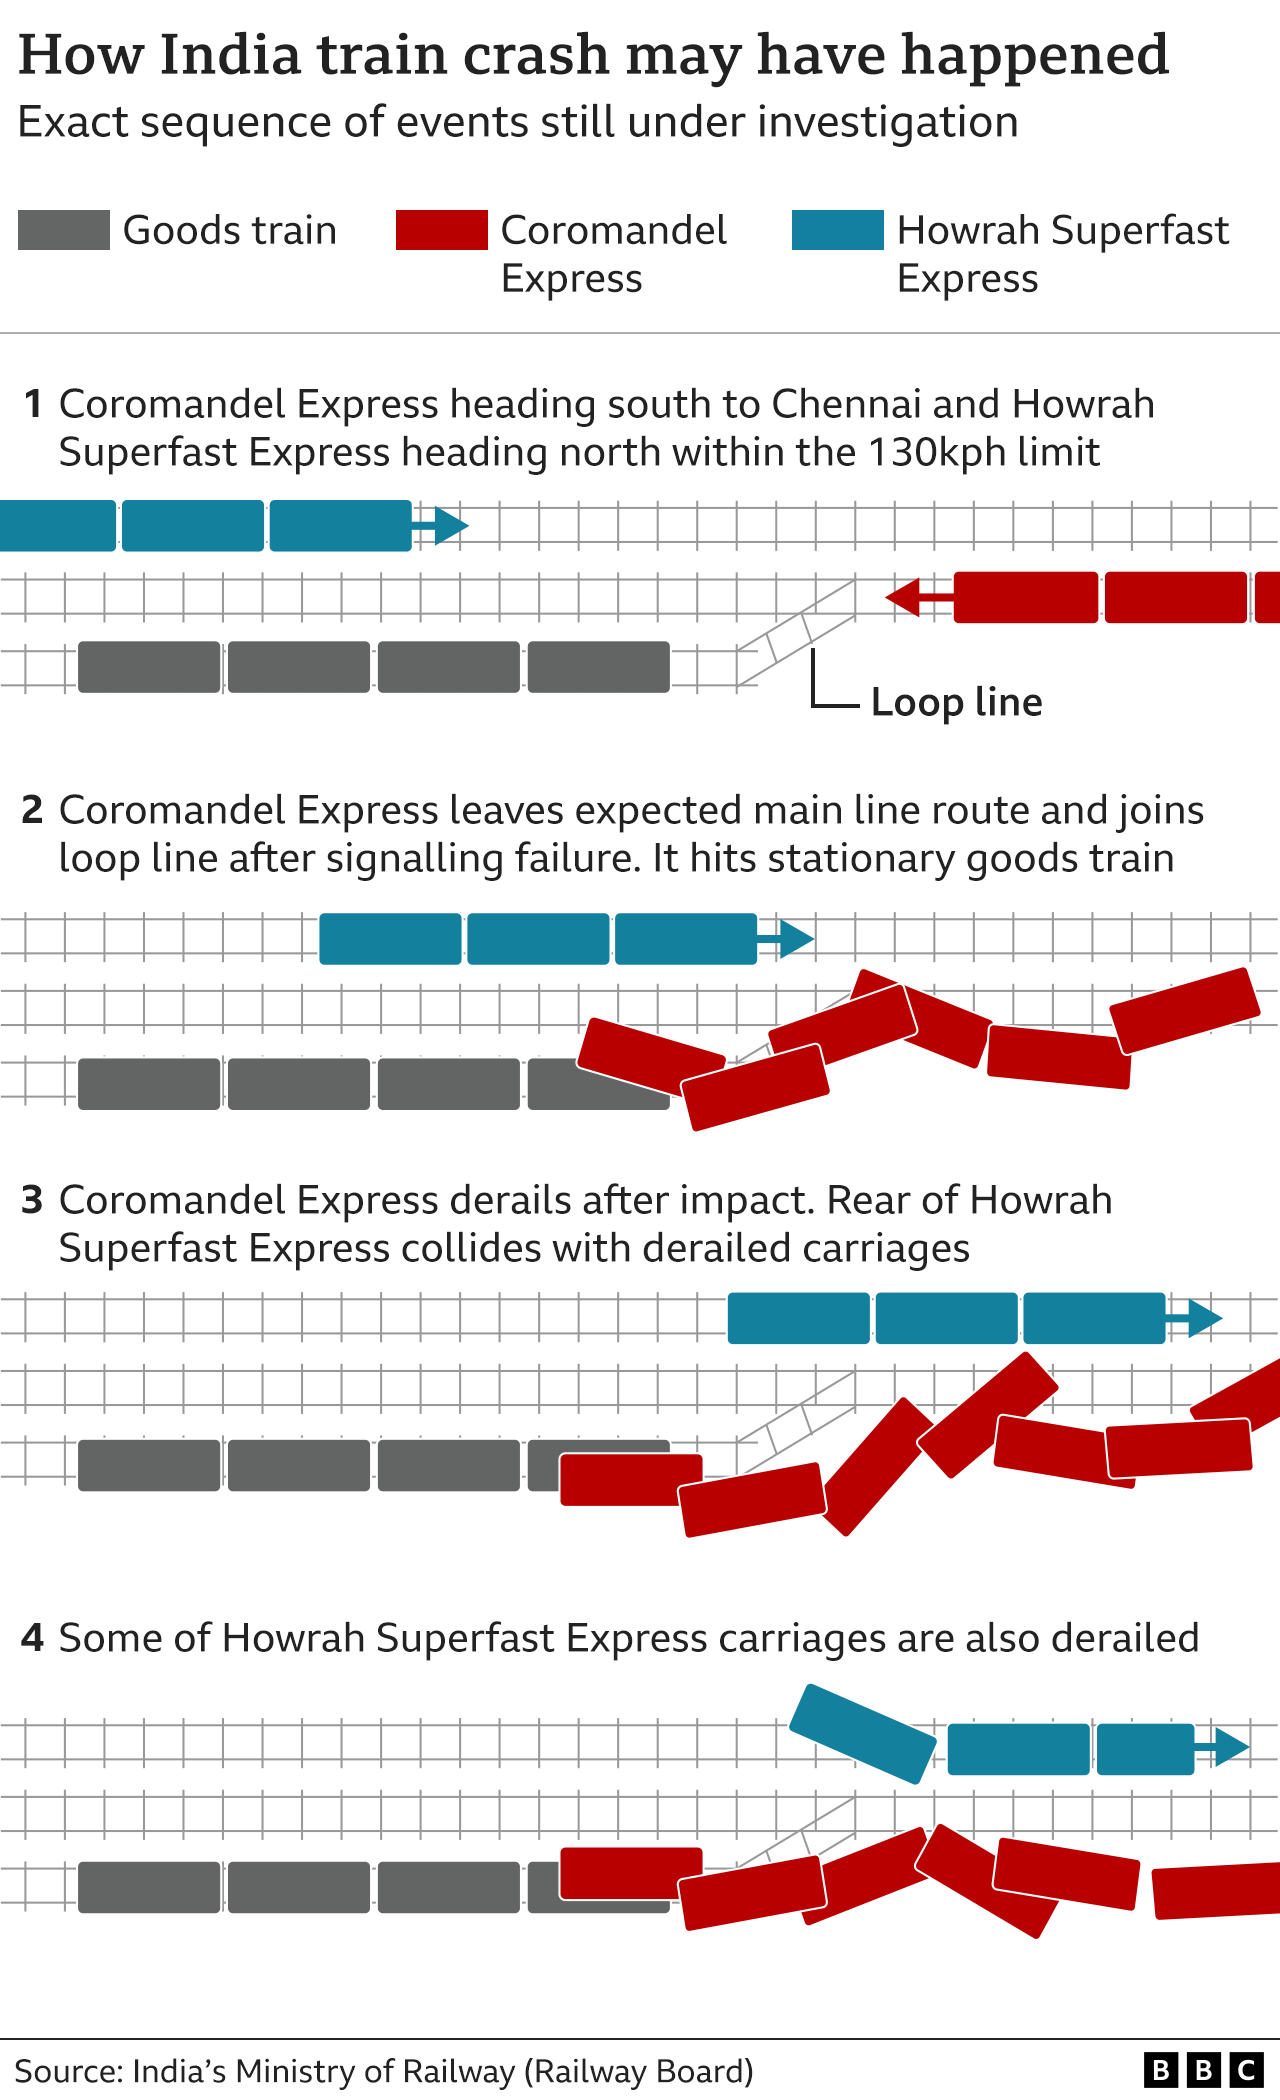 Графика BBC показывает, как могла произойти авария в Одише. Коромандельский экспресс сначала врезался в товарный поезд, хотя это неясно, как эти двое оказались на одном пути. Это привело к тому, что вагоны экспресса сошли с рельсов, которые затем были сбиты приближающимся экспрессом Howrah Superfast, в результате чего некоторые из собственных вагонов этого поезда также сошли с рельсов